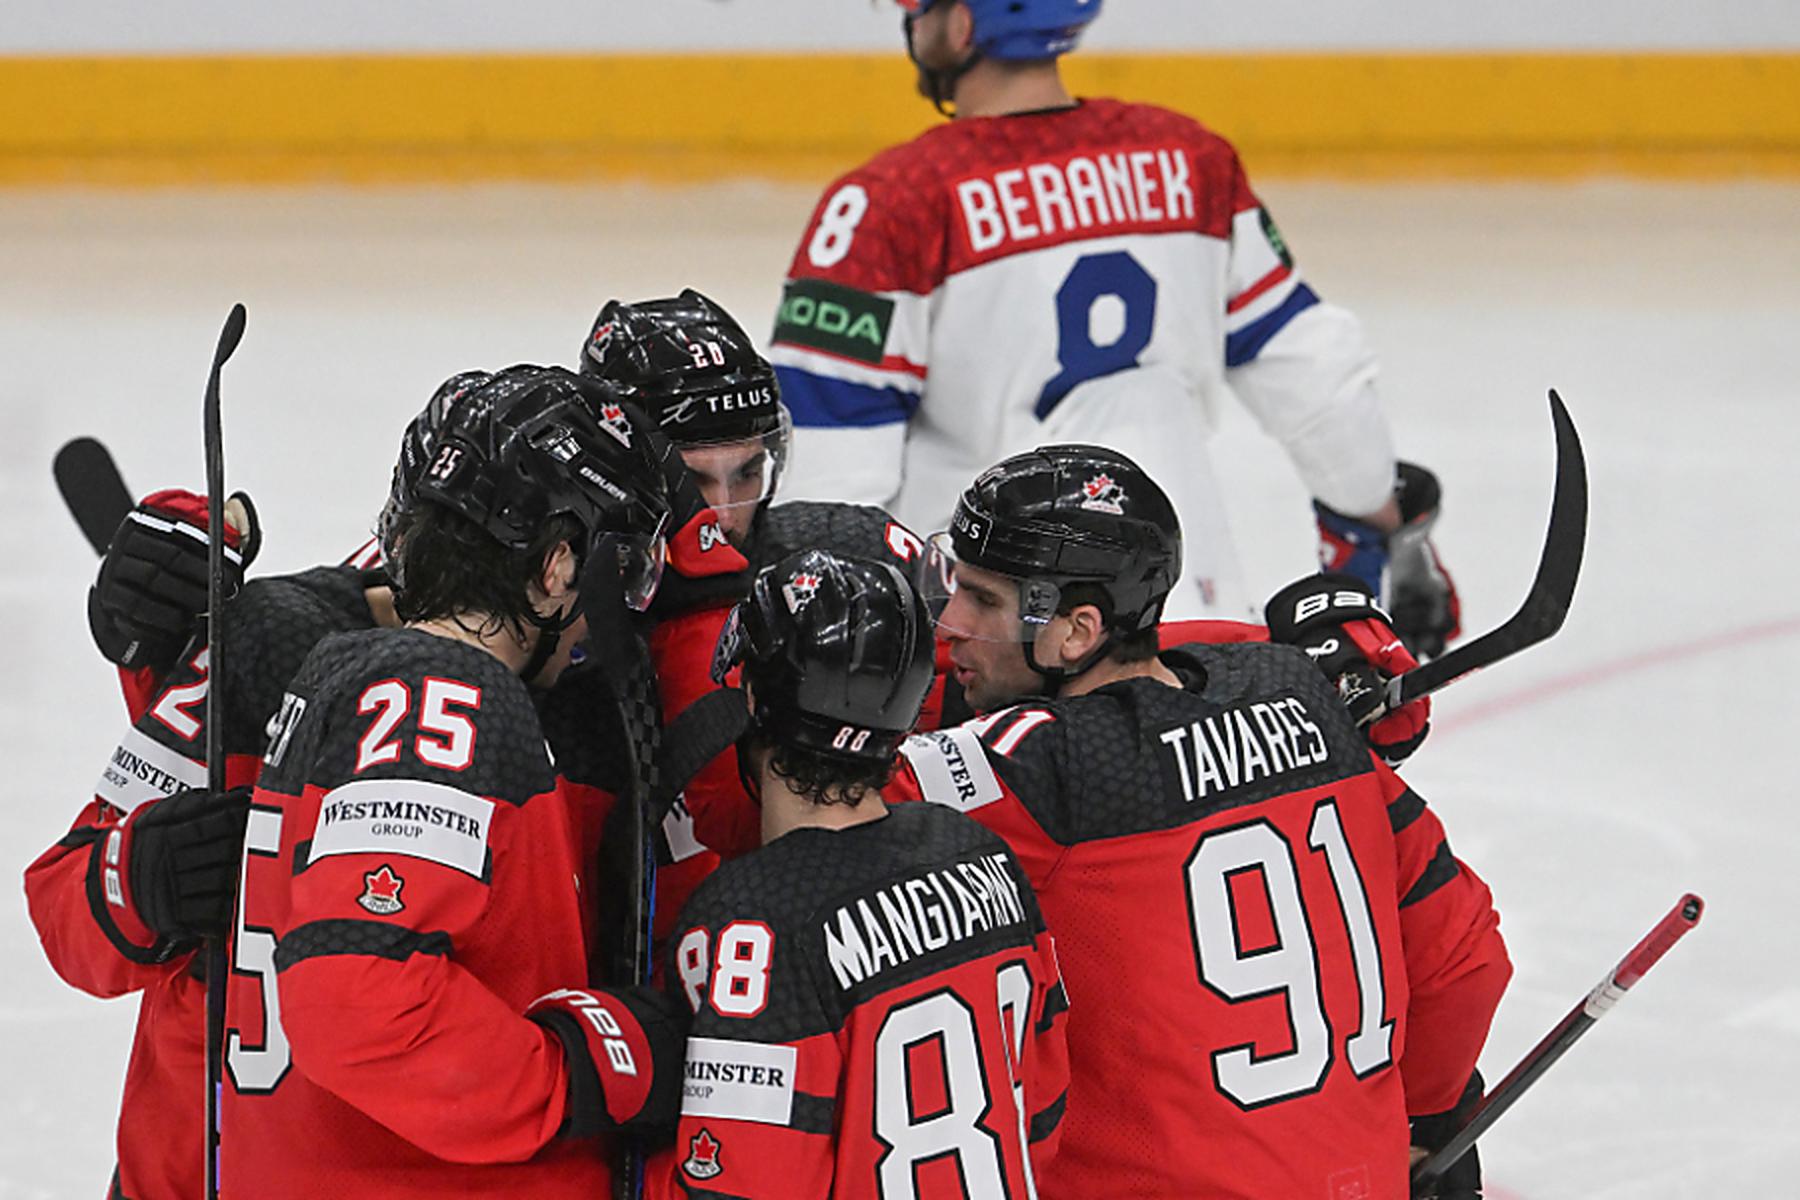 Prag: Kanada nach Sieg über Tschechien Gruppen-1. bei Eishockey-WM